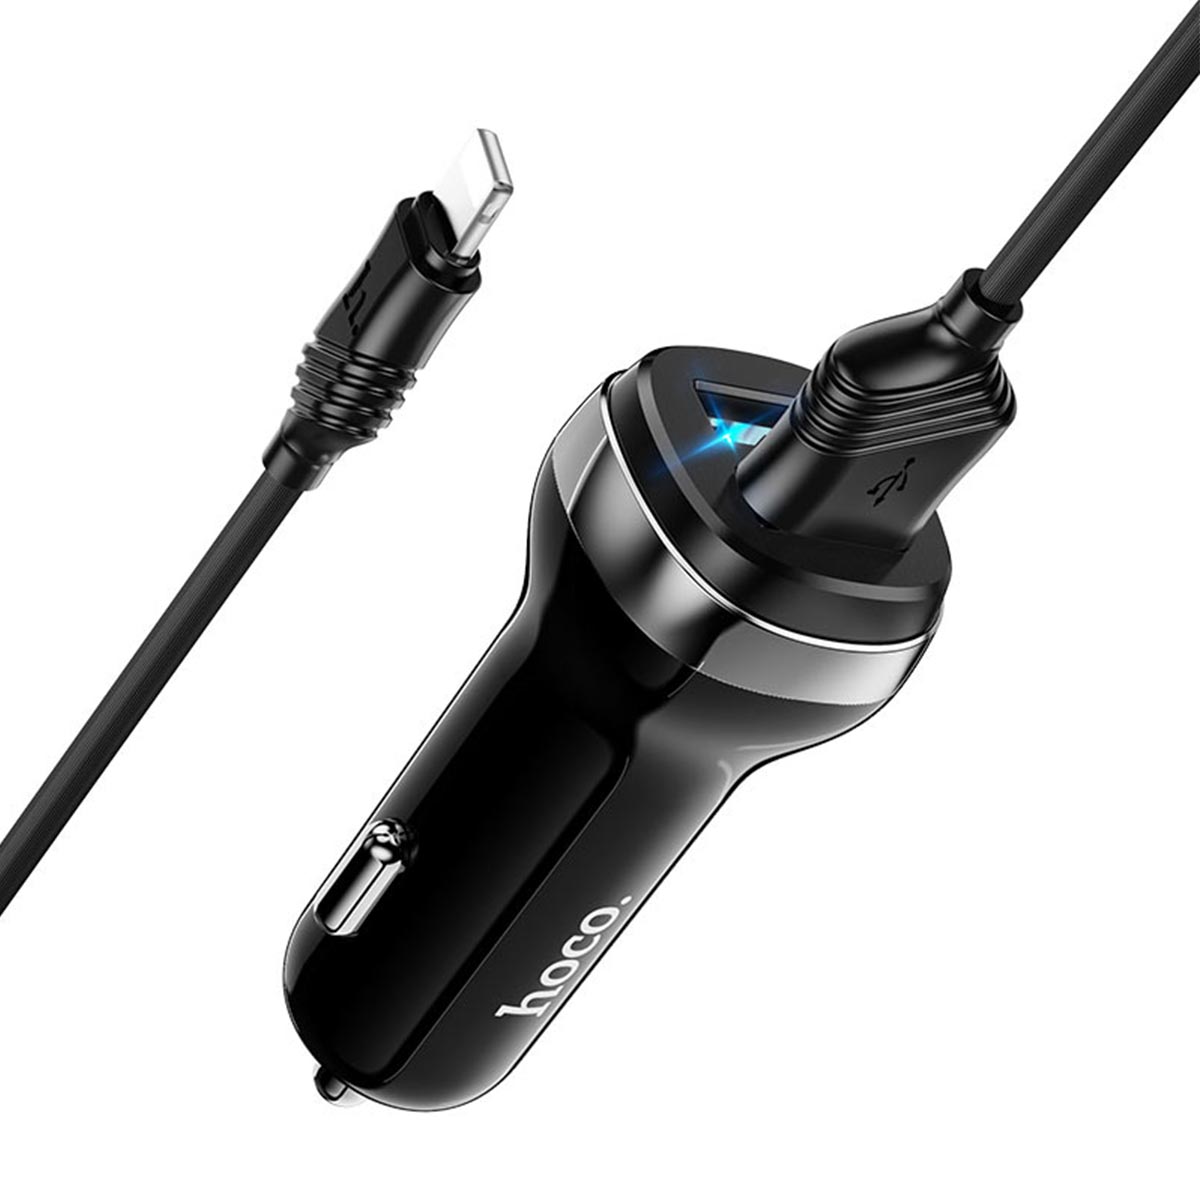 АЗУ (автомобильное зарядное устройство) HOCO Z40 Superior, 2 USB порта, кабель APPLE Lightning 8-pin, 1 метр, цвет черный